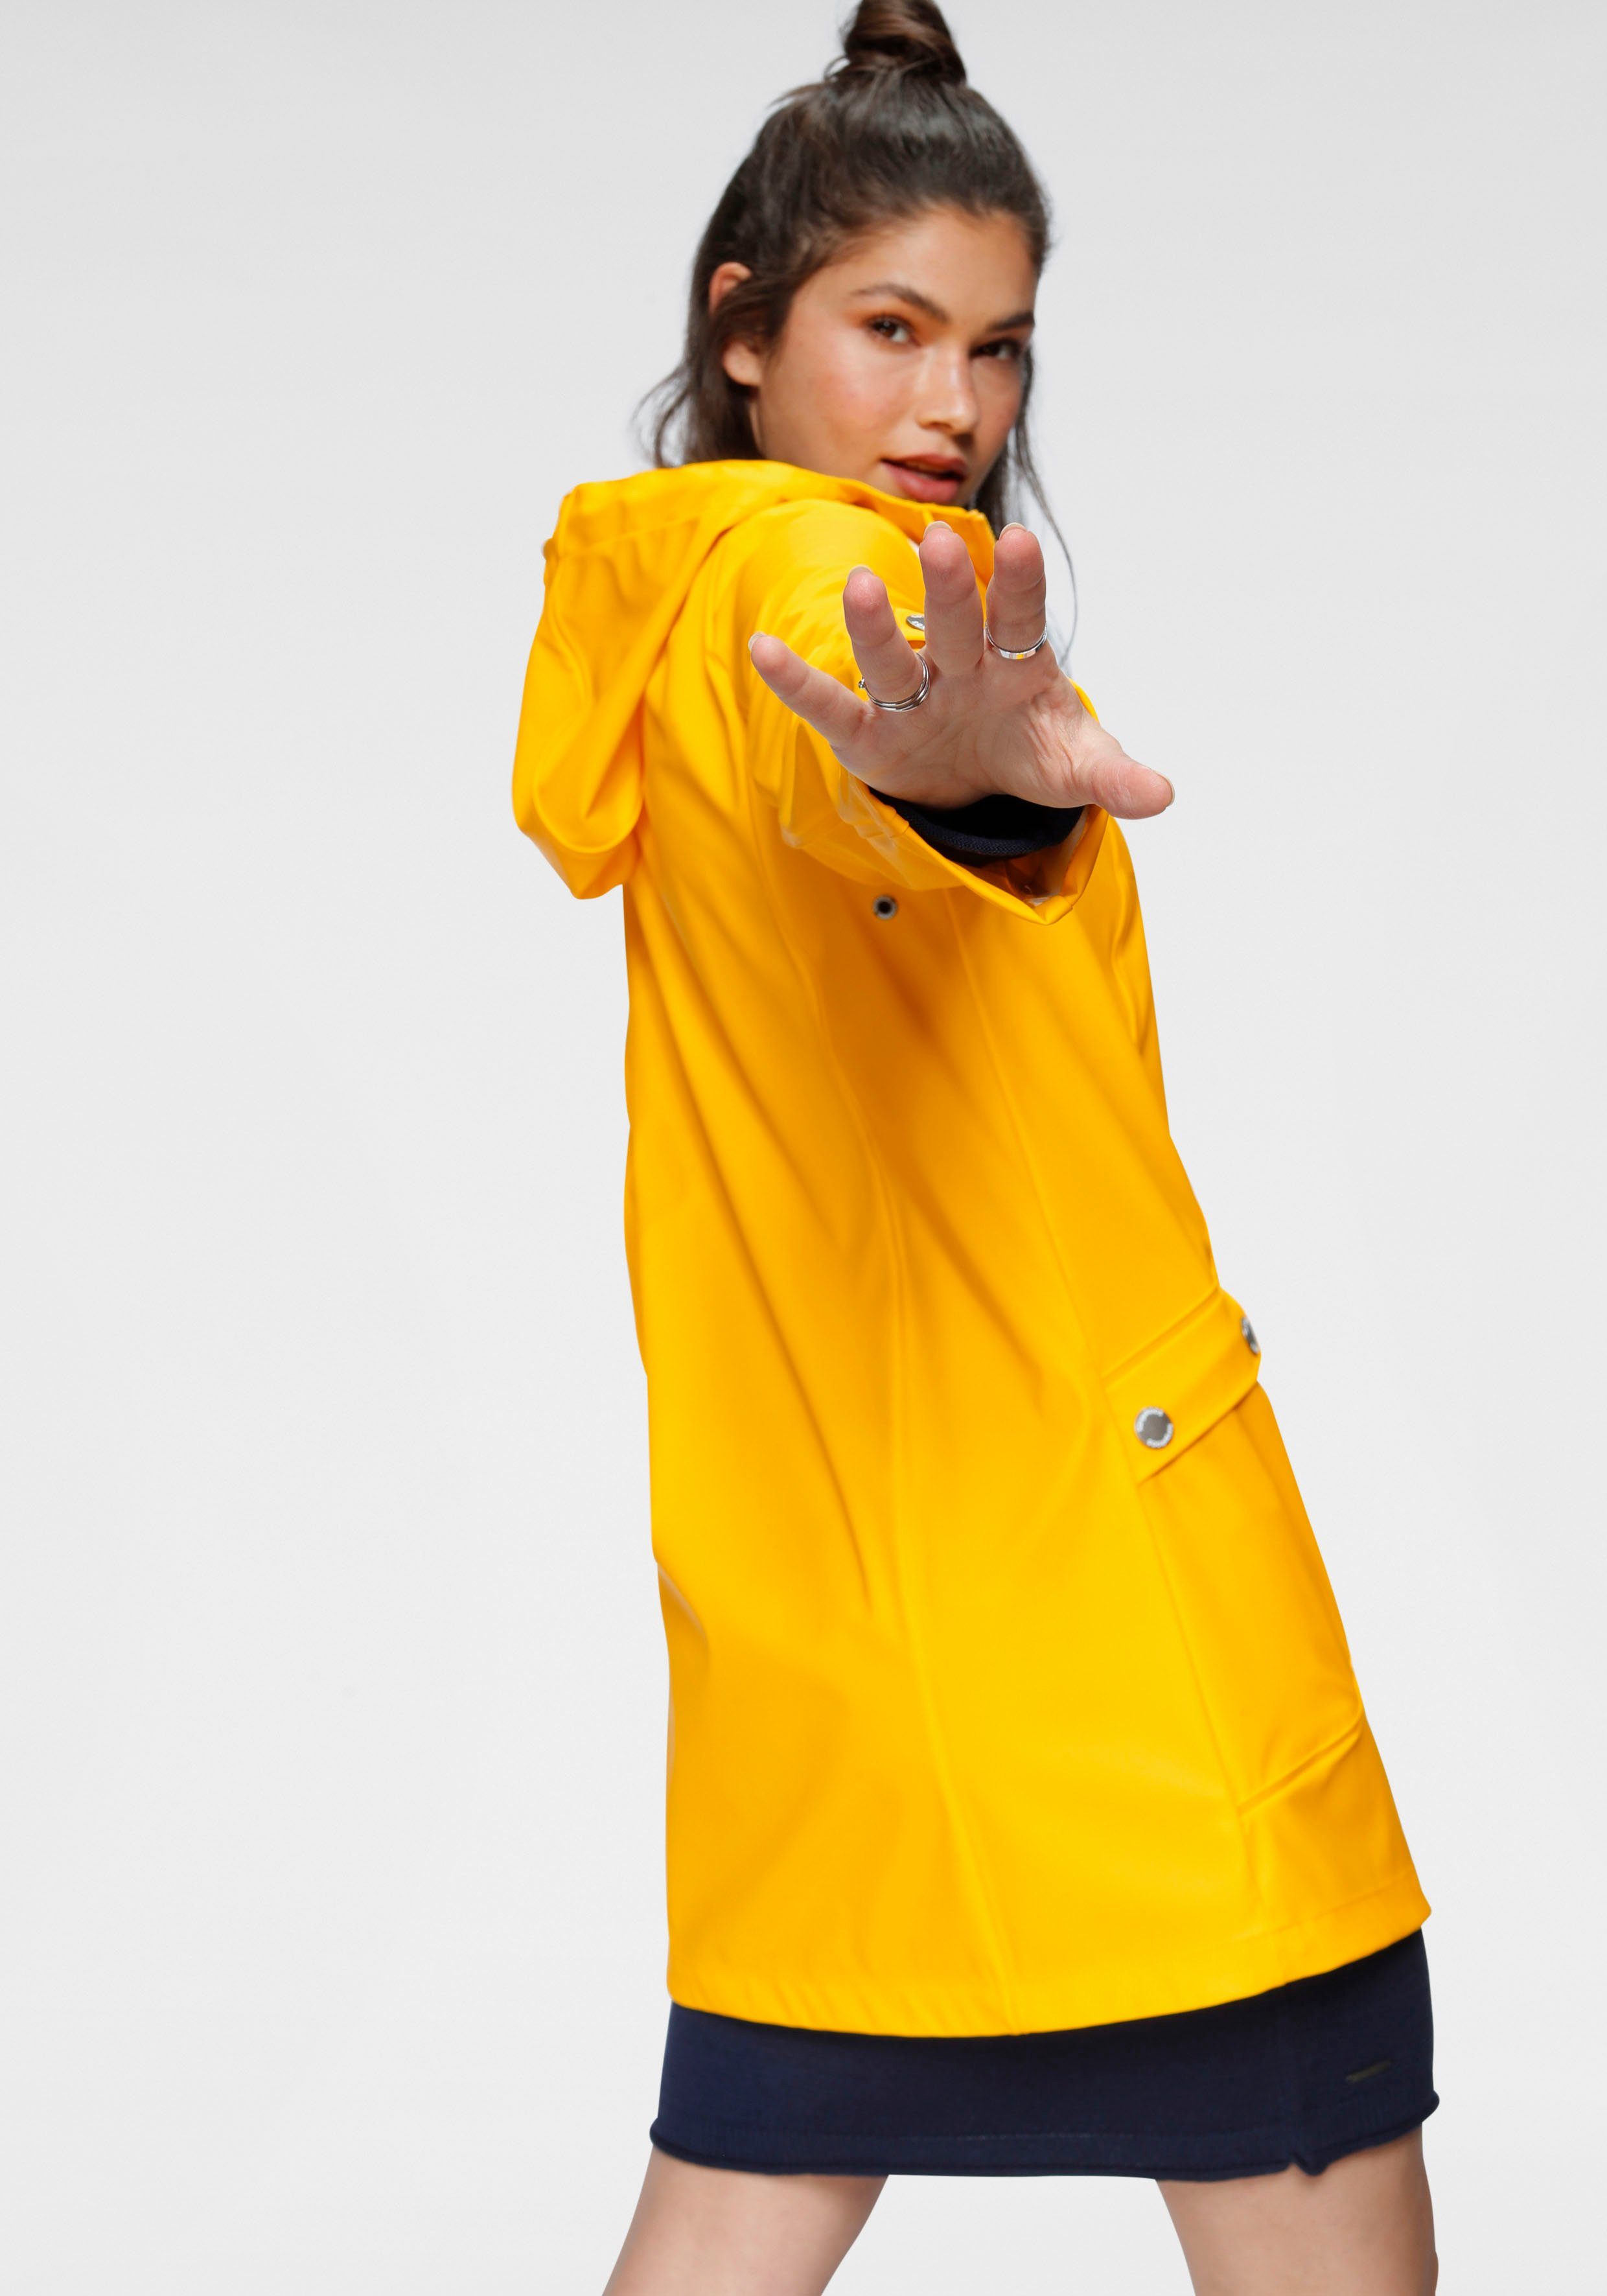 reflektierenden Logo-Drucken gelb KangaROOS mit Regenjacke